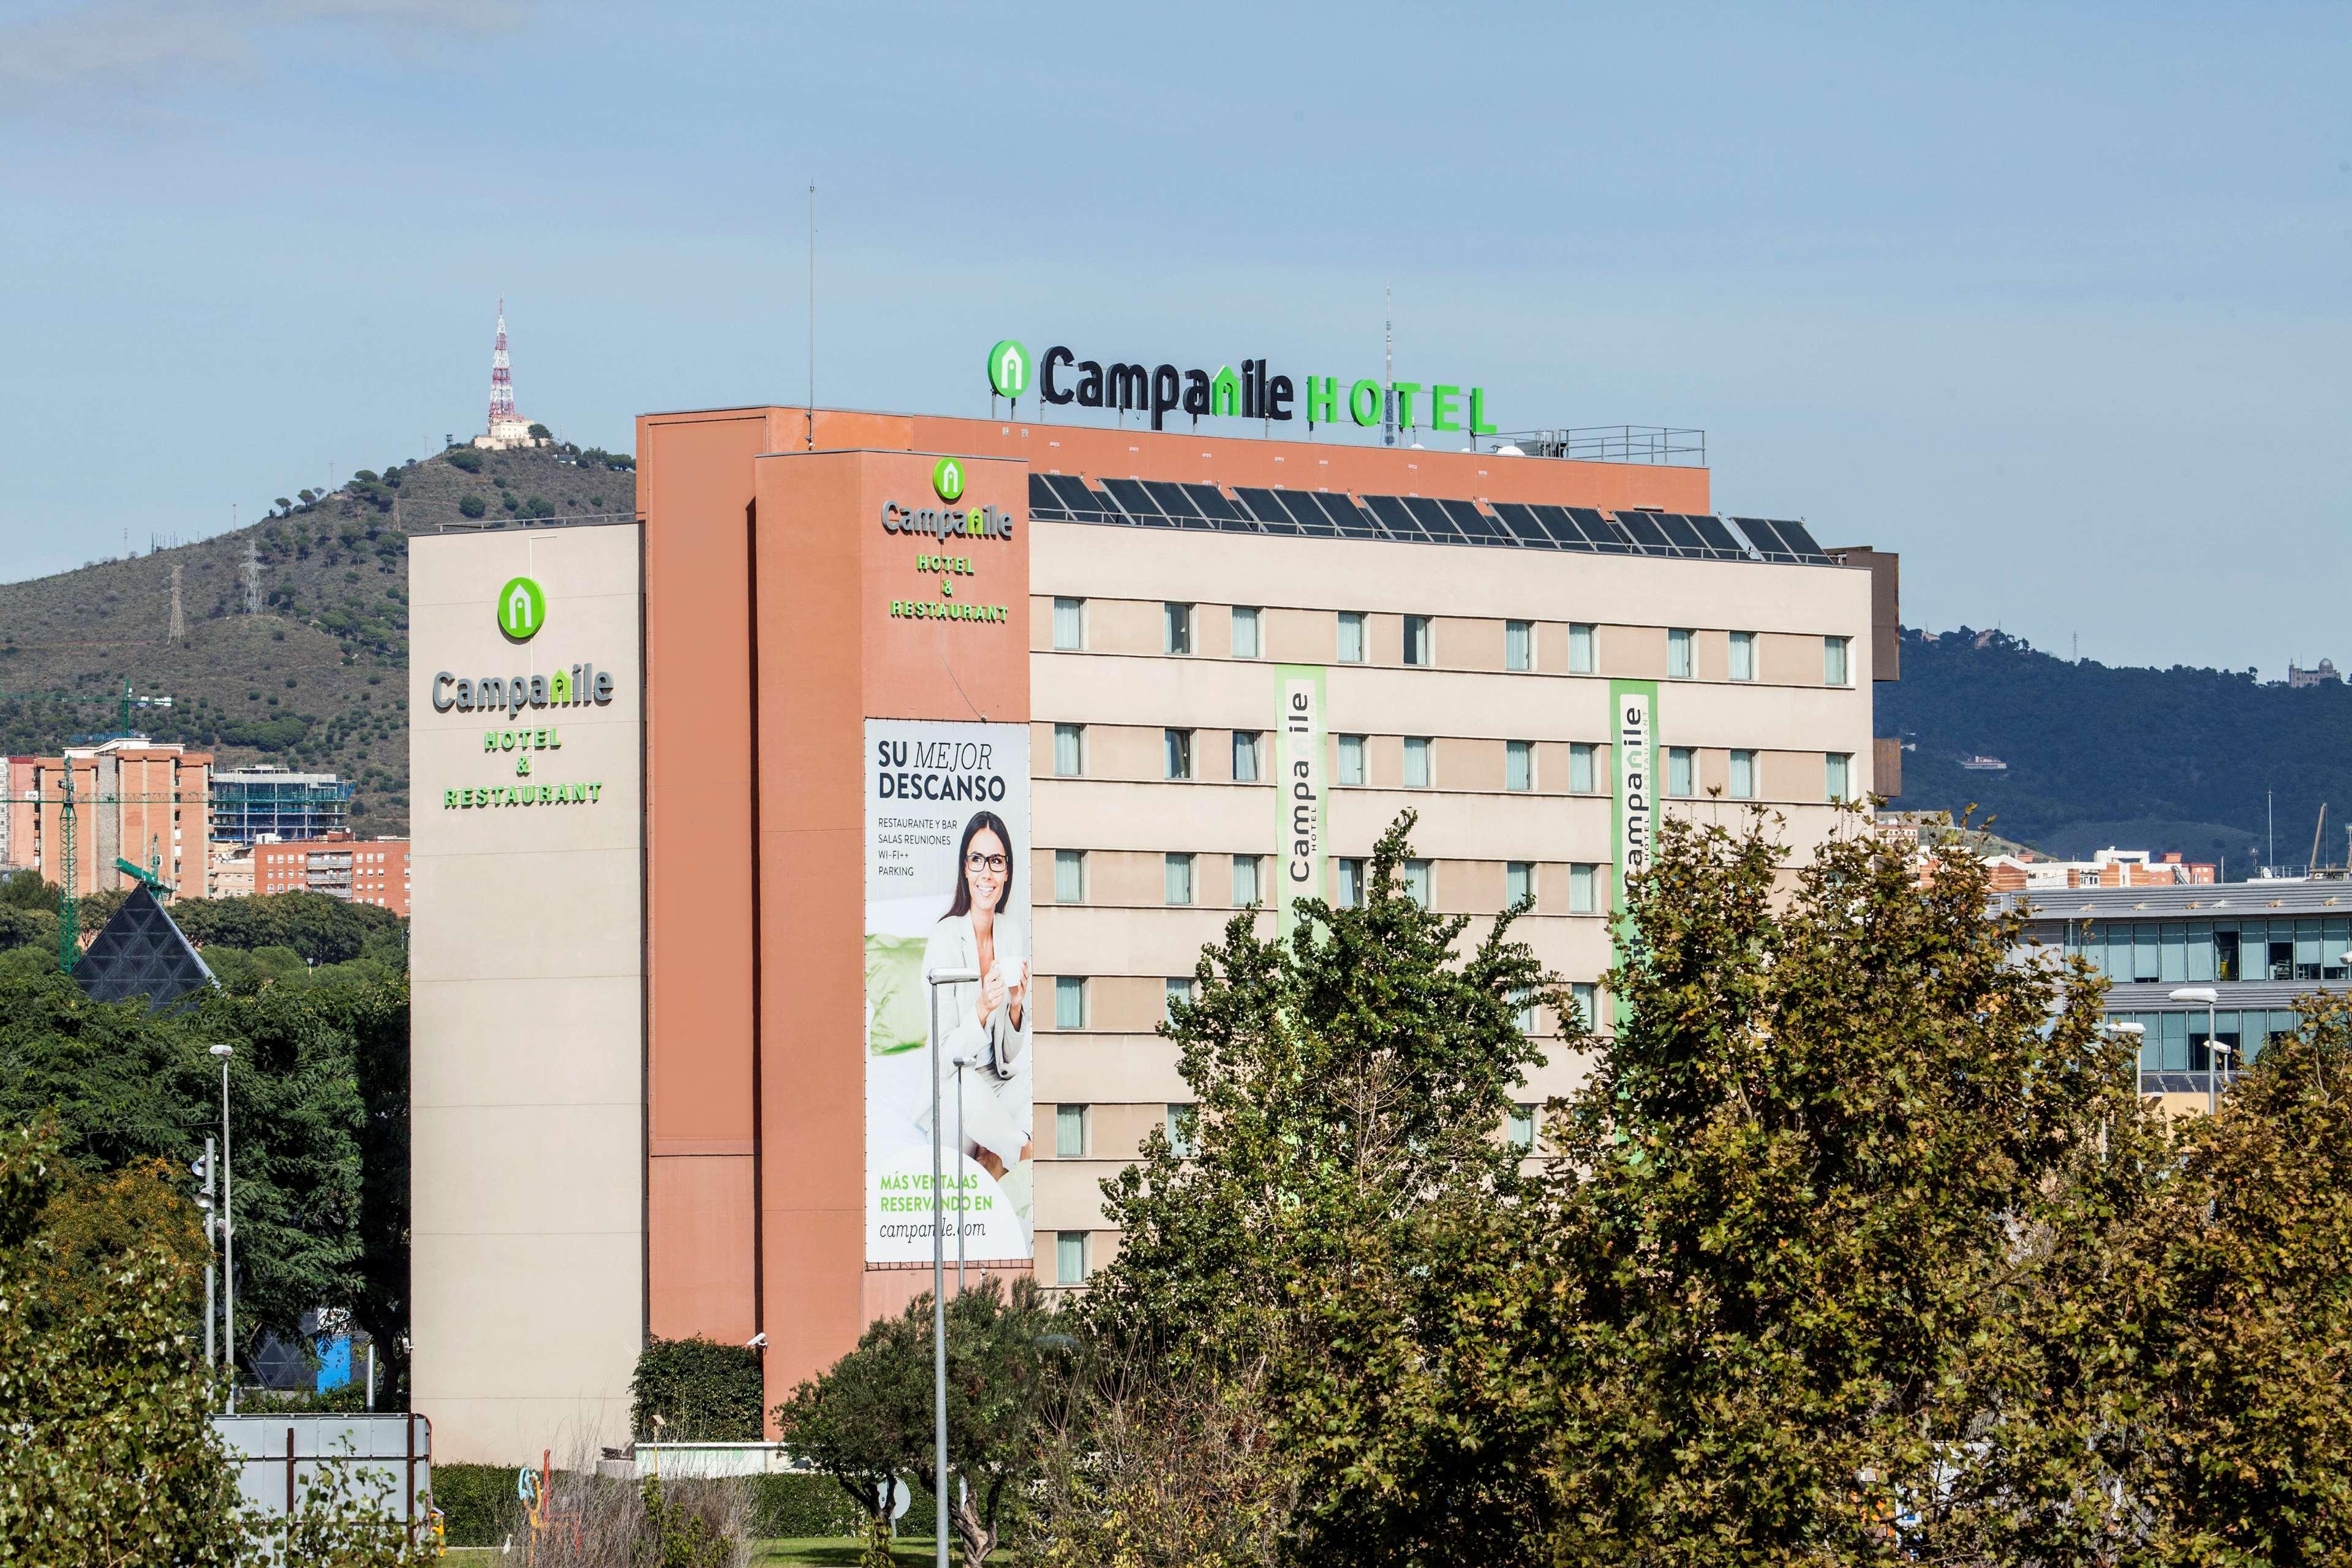 Отель Campanile Barcelona Sud - Cornella Корнелья де Лиобрегат Экстерьер фото